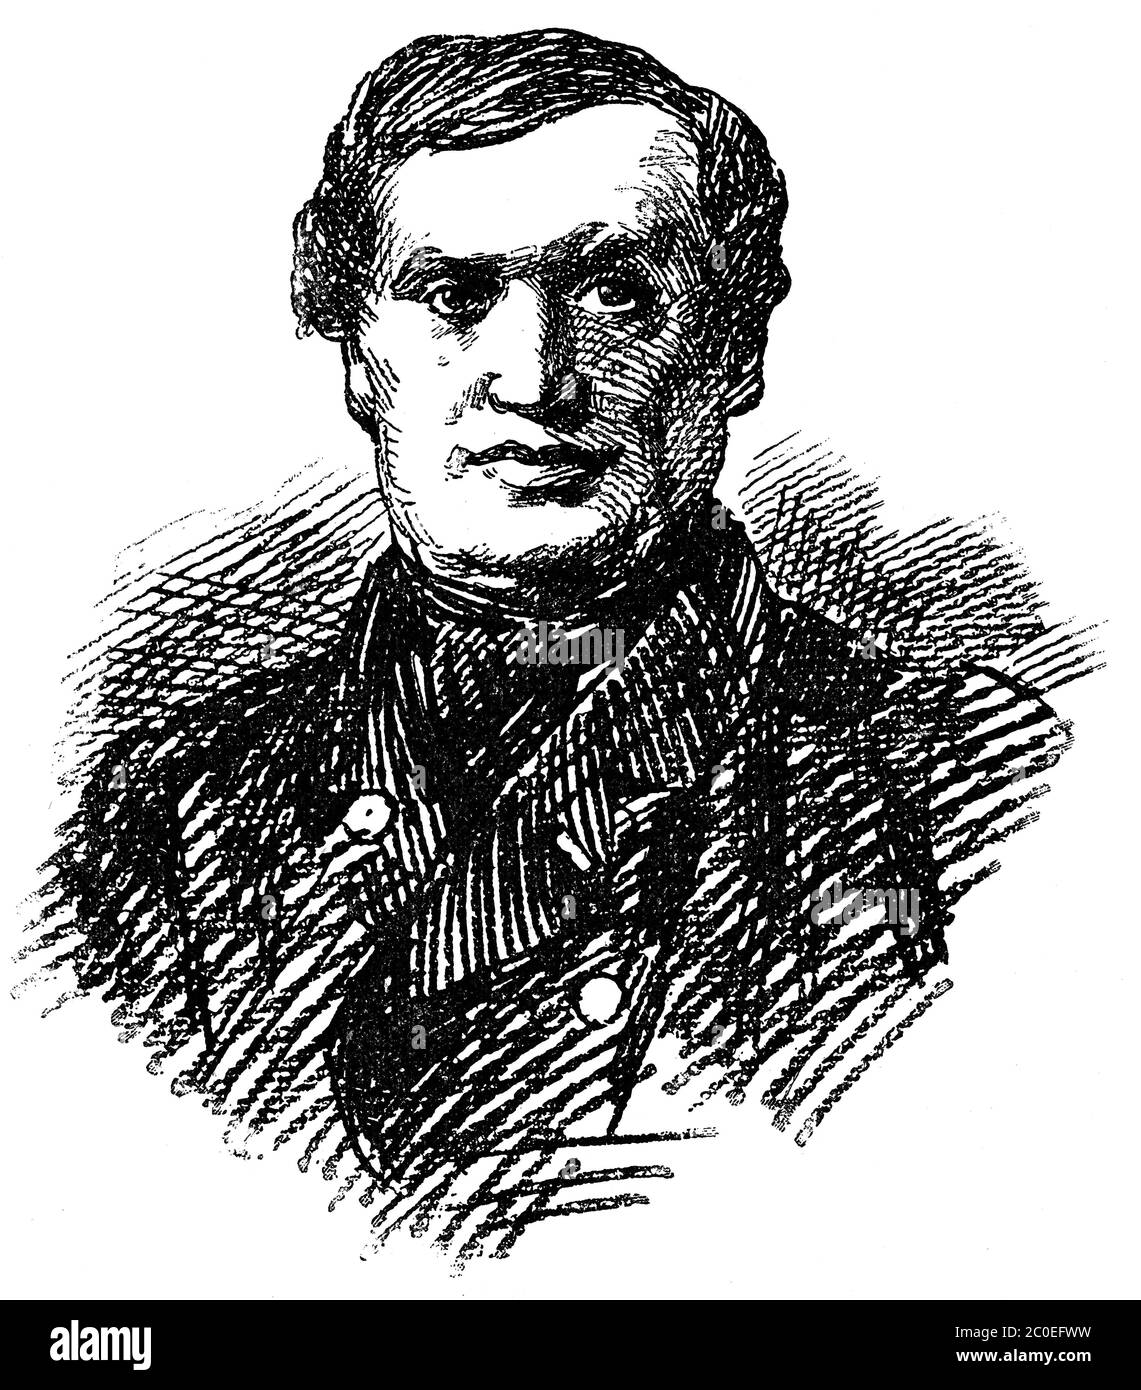 Portrait de Wilhelm von Braumueller (1807–1884) - un marchand et éditeur de livres germano-autrichiens. Illustration du XIXe siècle. Fond blanc. Banque D'Images